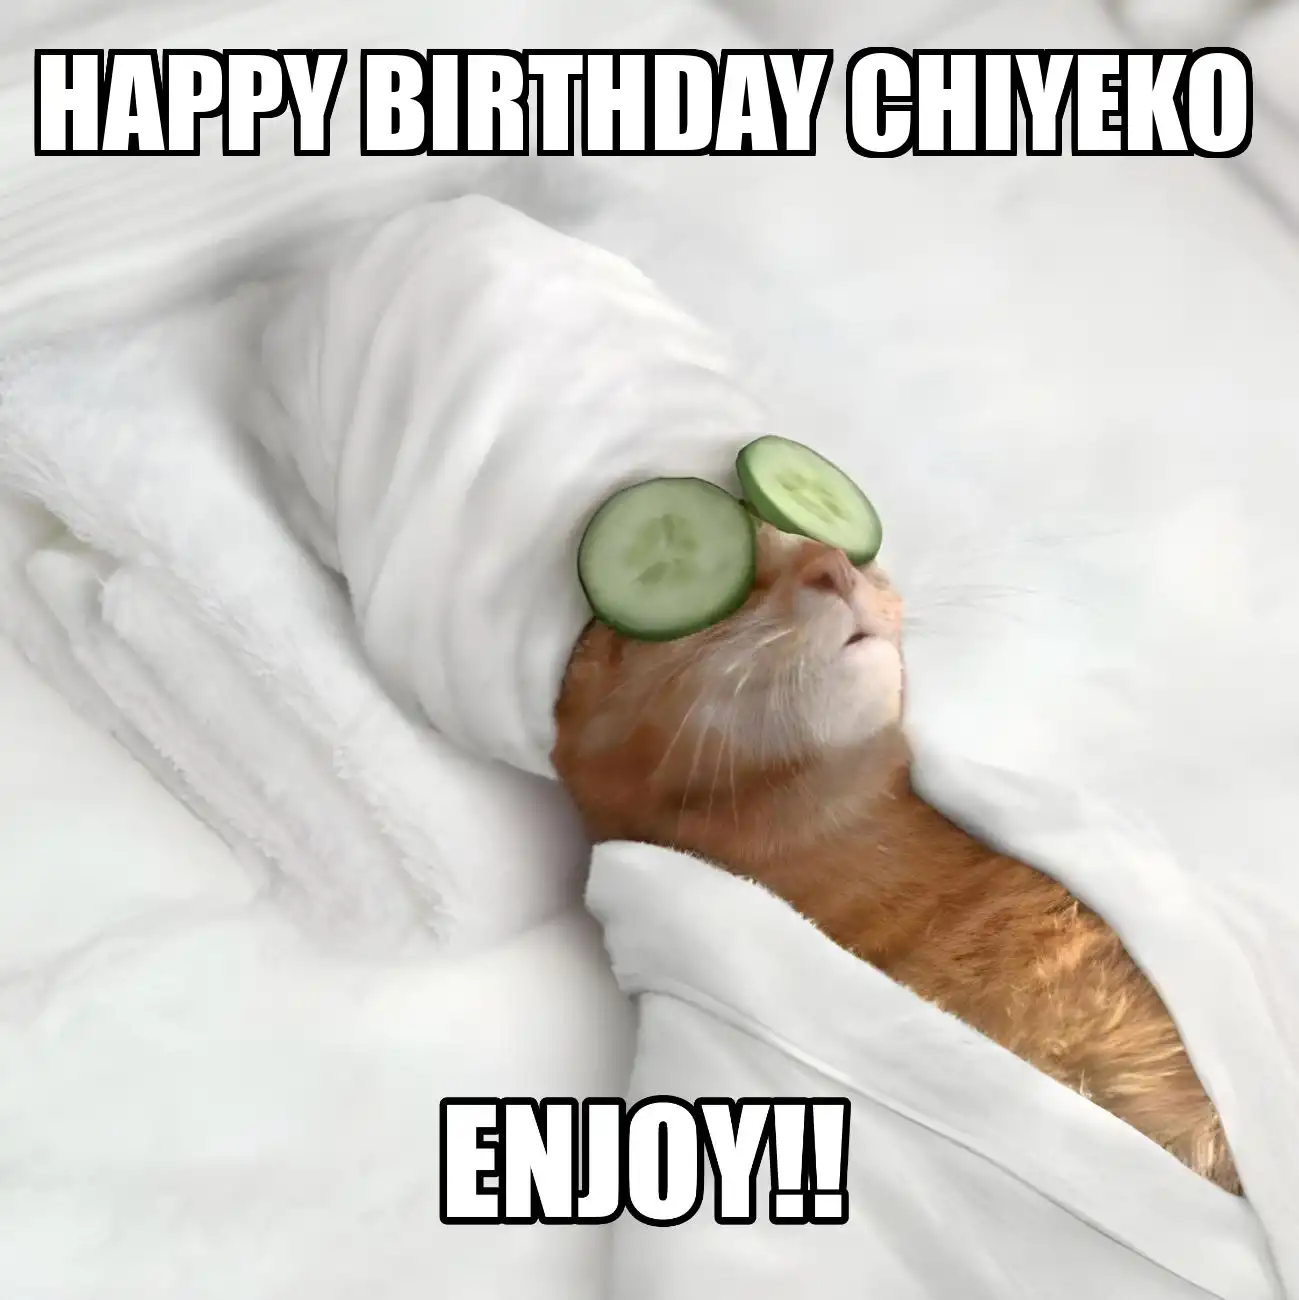 Happy Birthday Chiyeko Enjoy Cat Meme